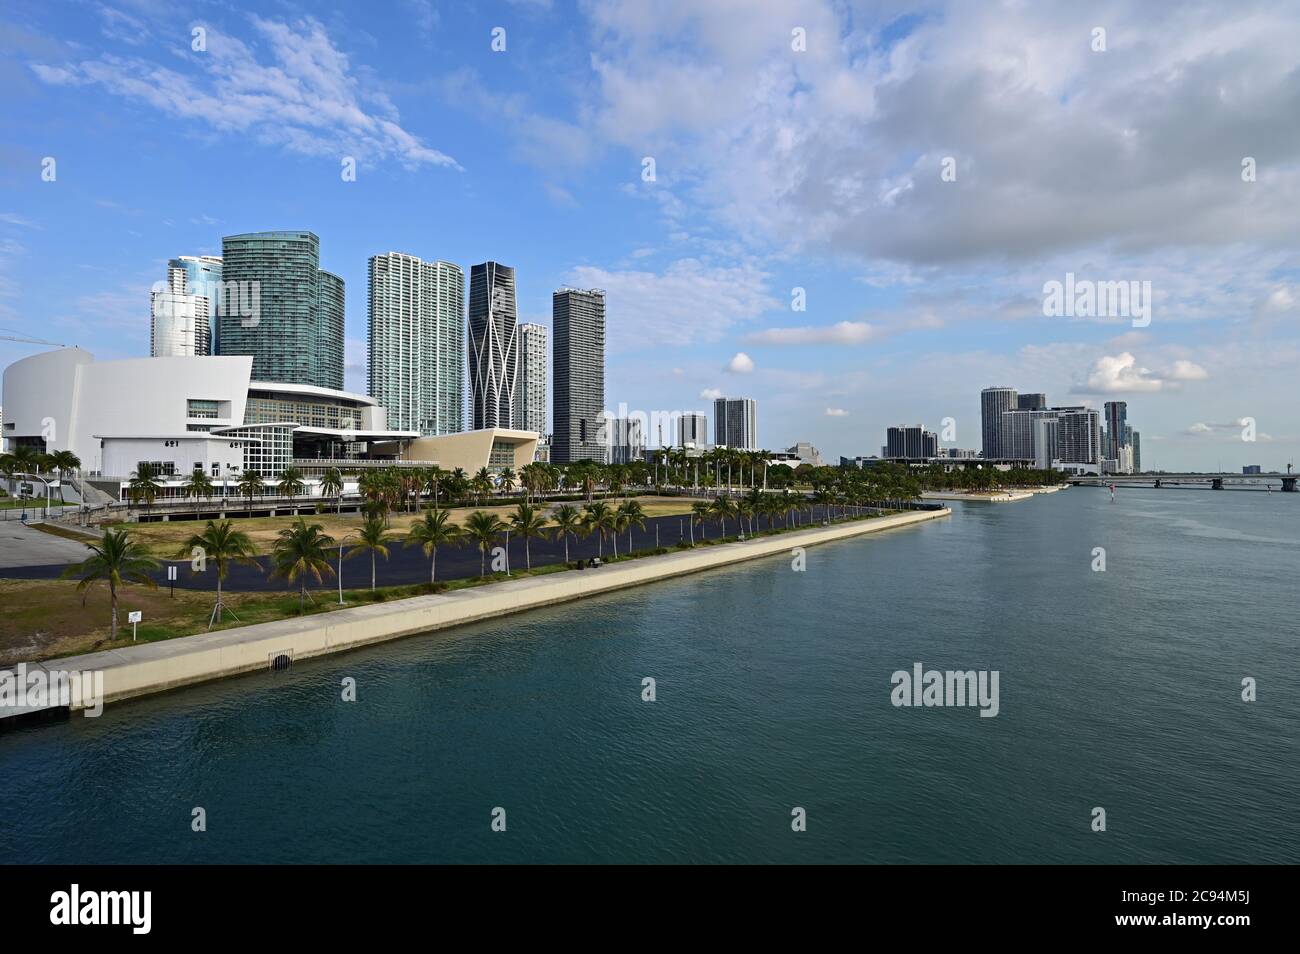 Miami (Floride) - le 5 avril 2020 - Miami Arena et tours résidentielles en bordure de l'eau sur Biscayne Boulevard. Banque D'Images